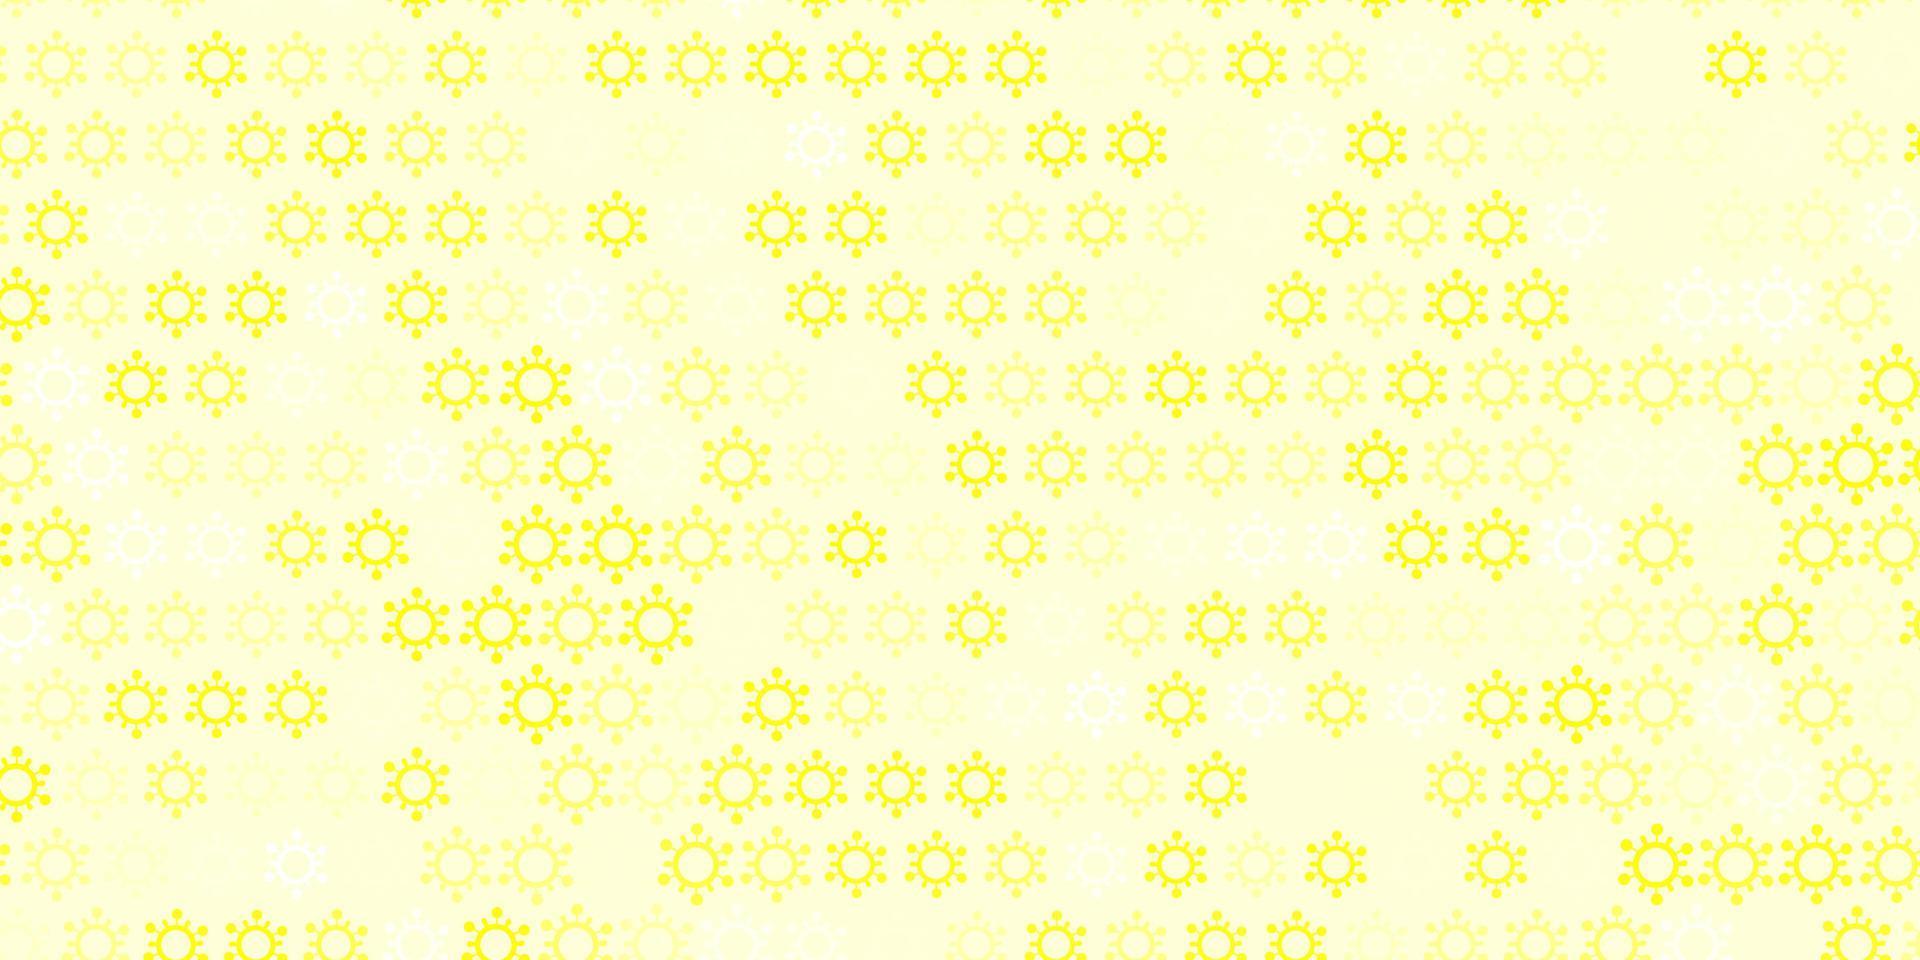 ljus gul vektor bakgrund med covid-19 symboler.